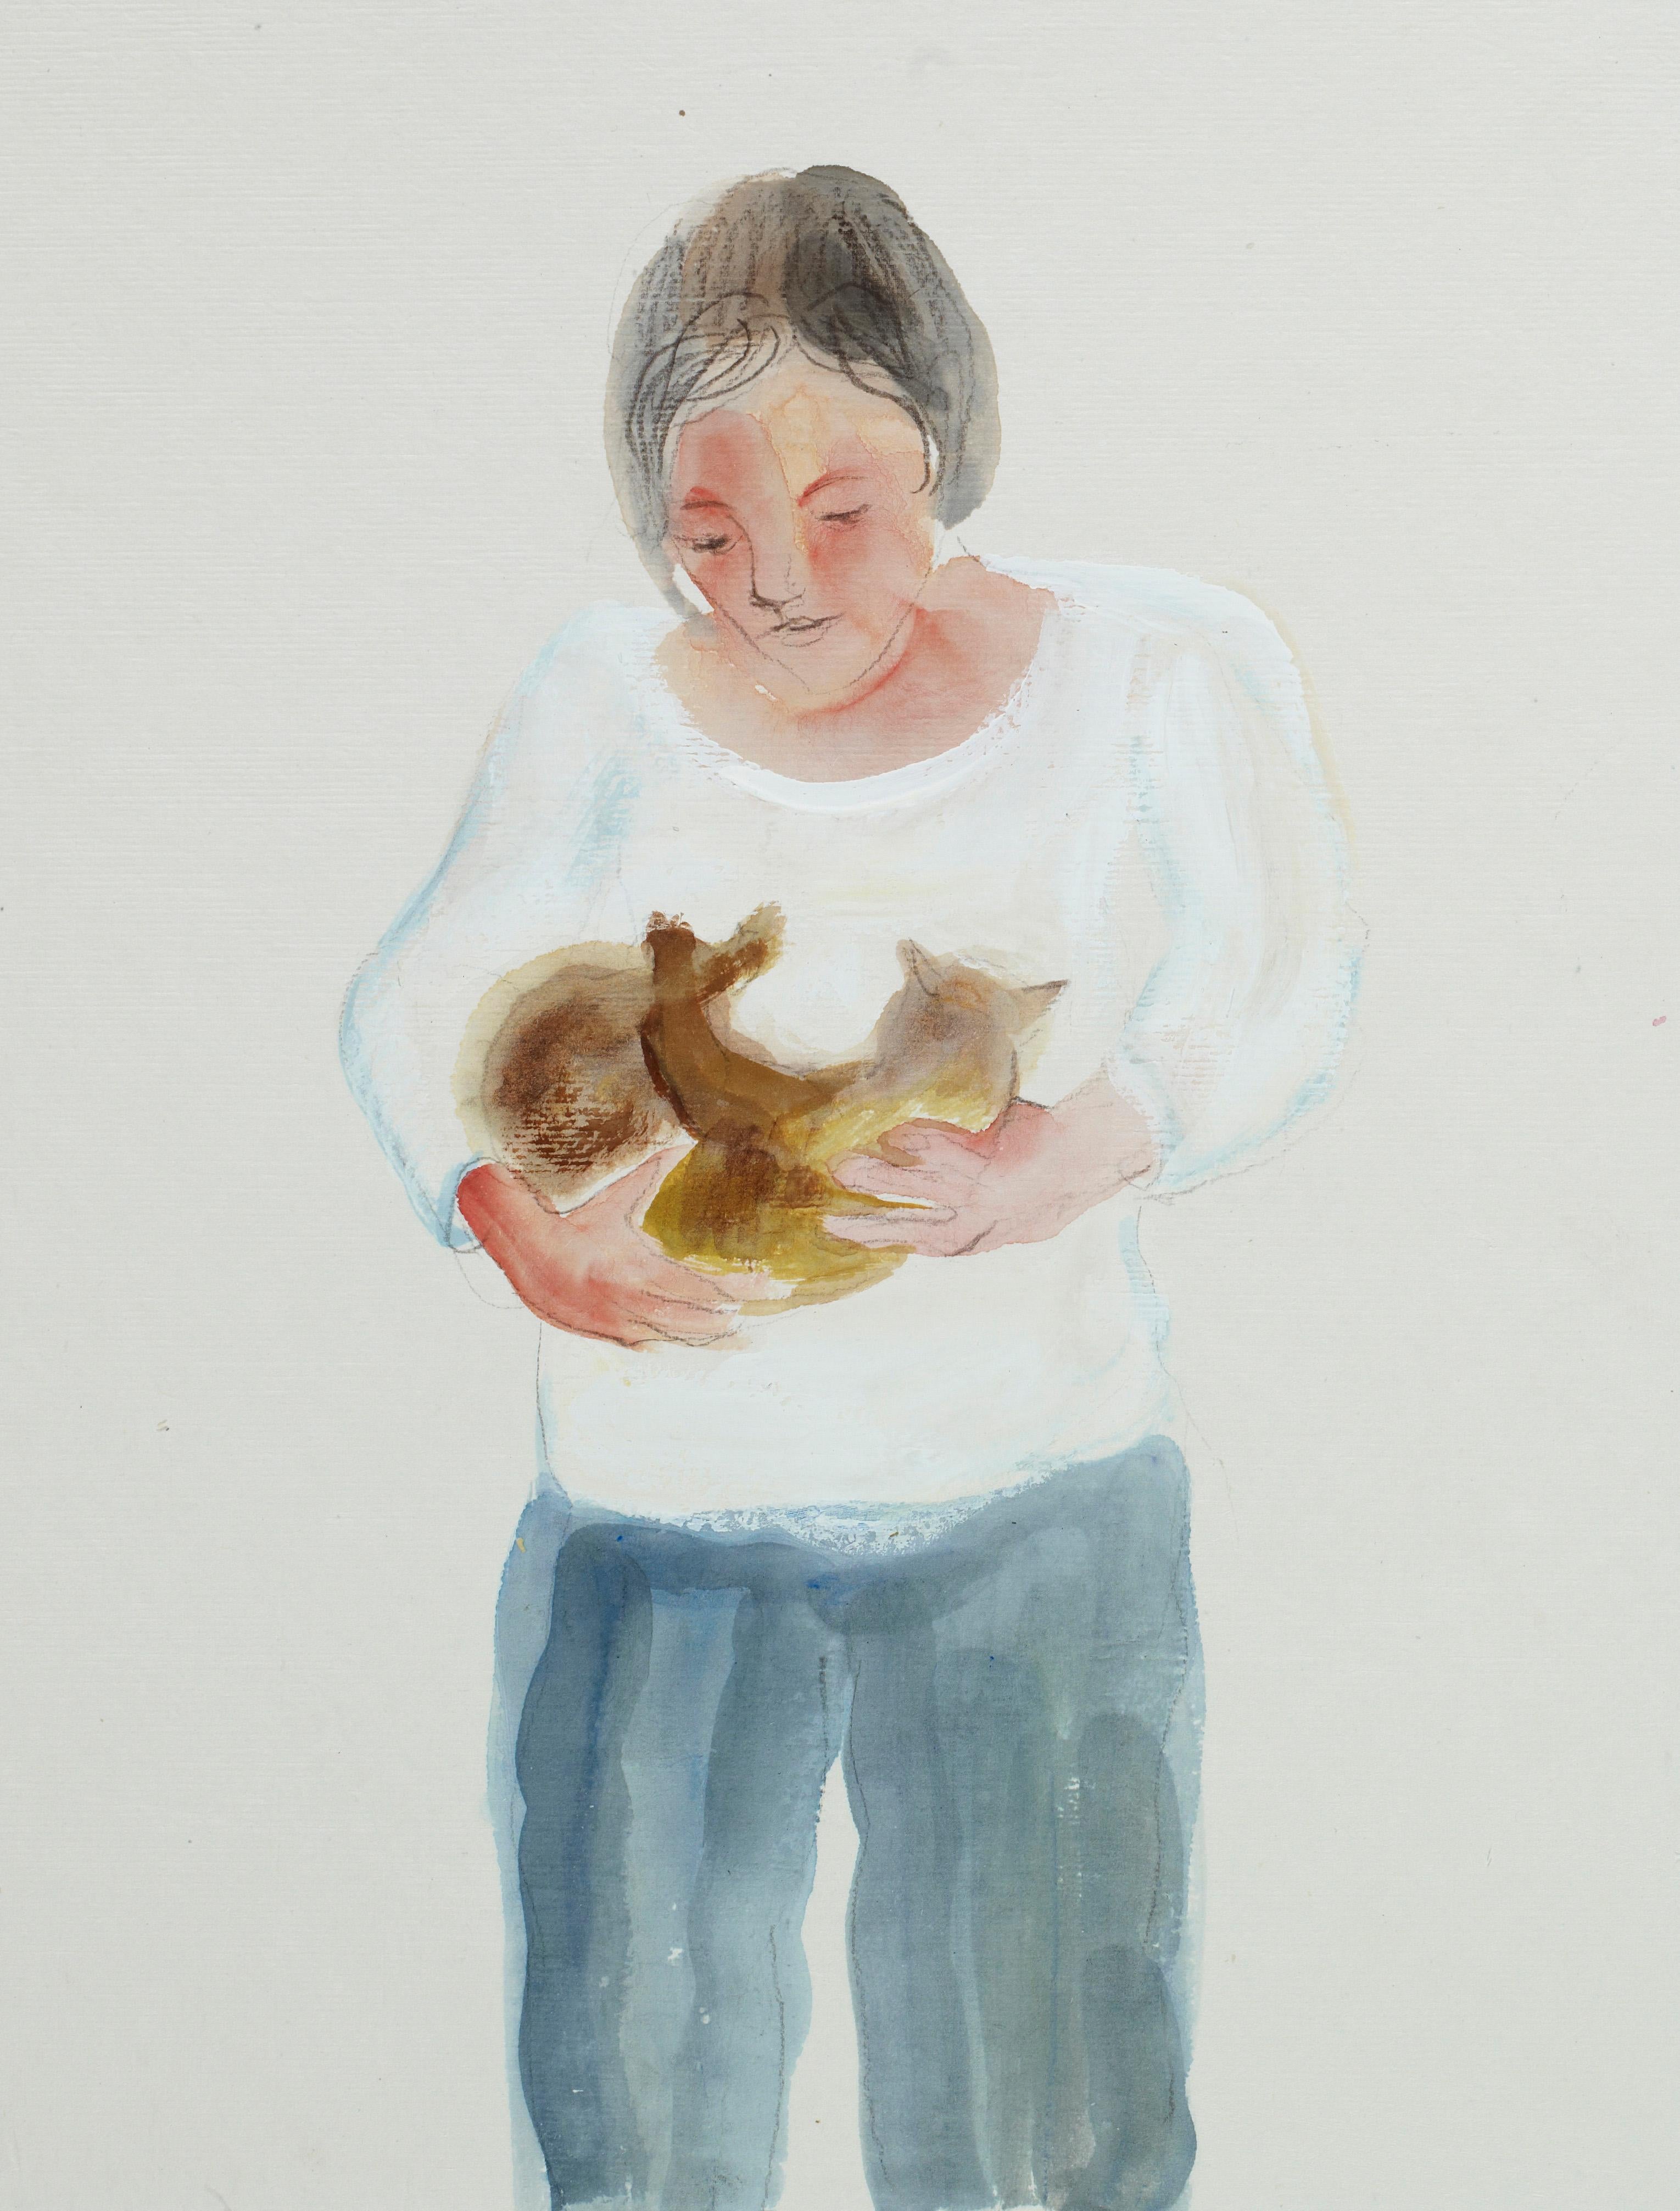 Zhang Chunyang Figurative Art – Expressionistisches figuratives Aquarellgemälde einer jungen Dame, die eine Katze hält